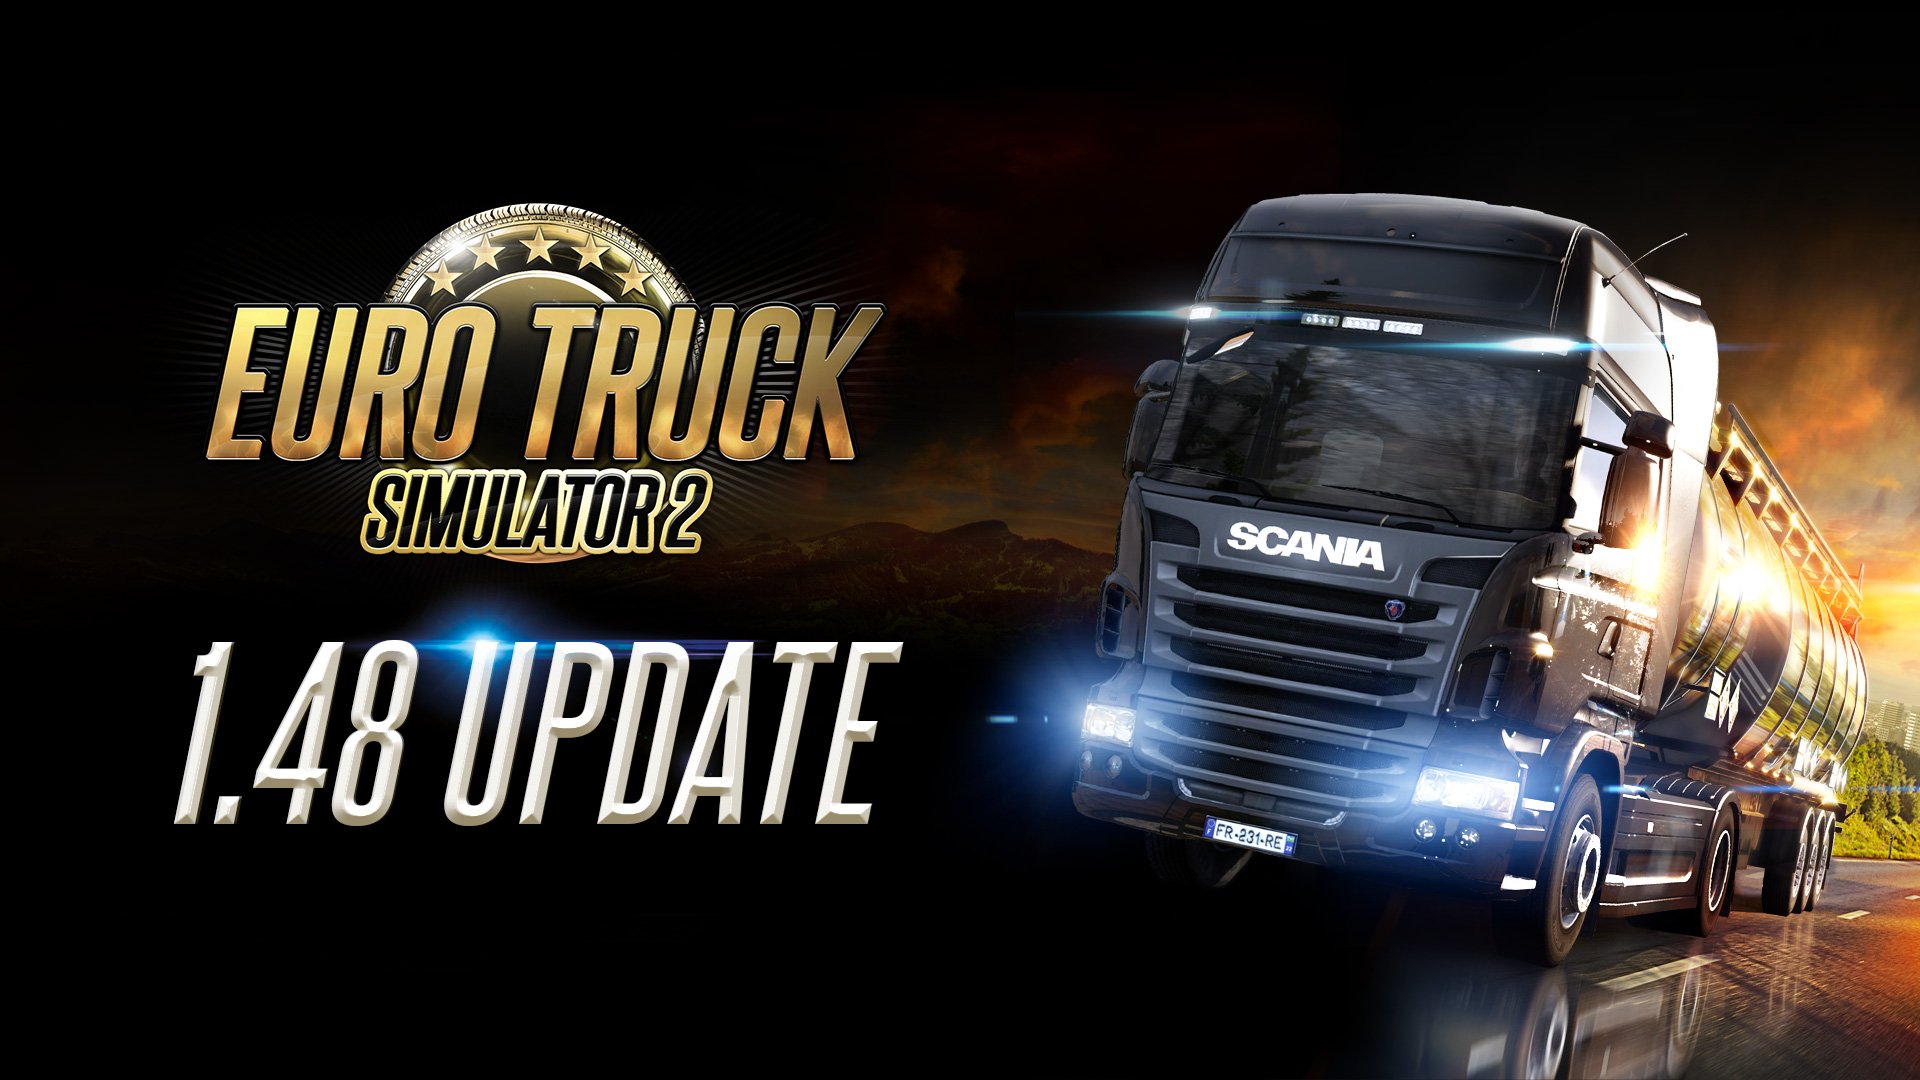 More information about "Euro Truck Simulator 2: rilasciata la nuova versione, Germania aggiornata"